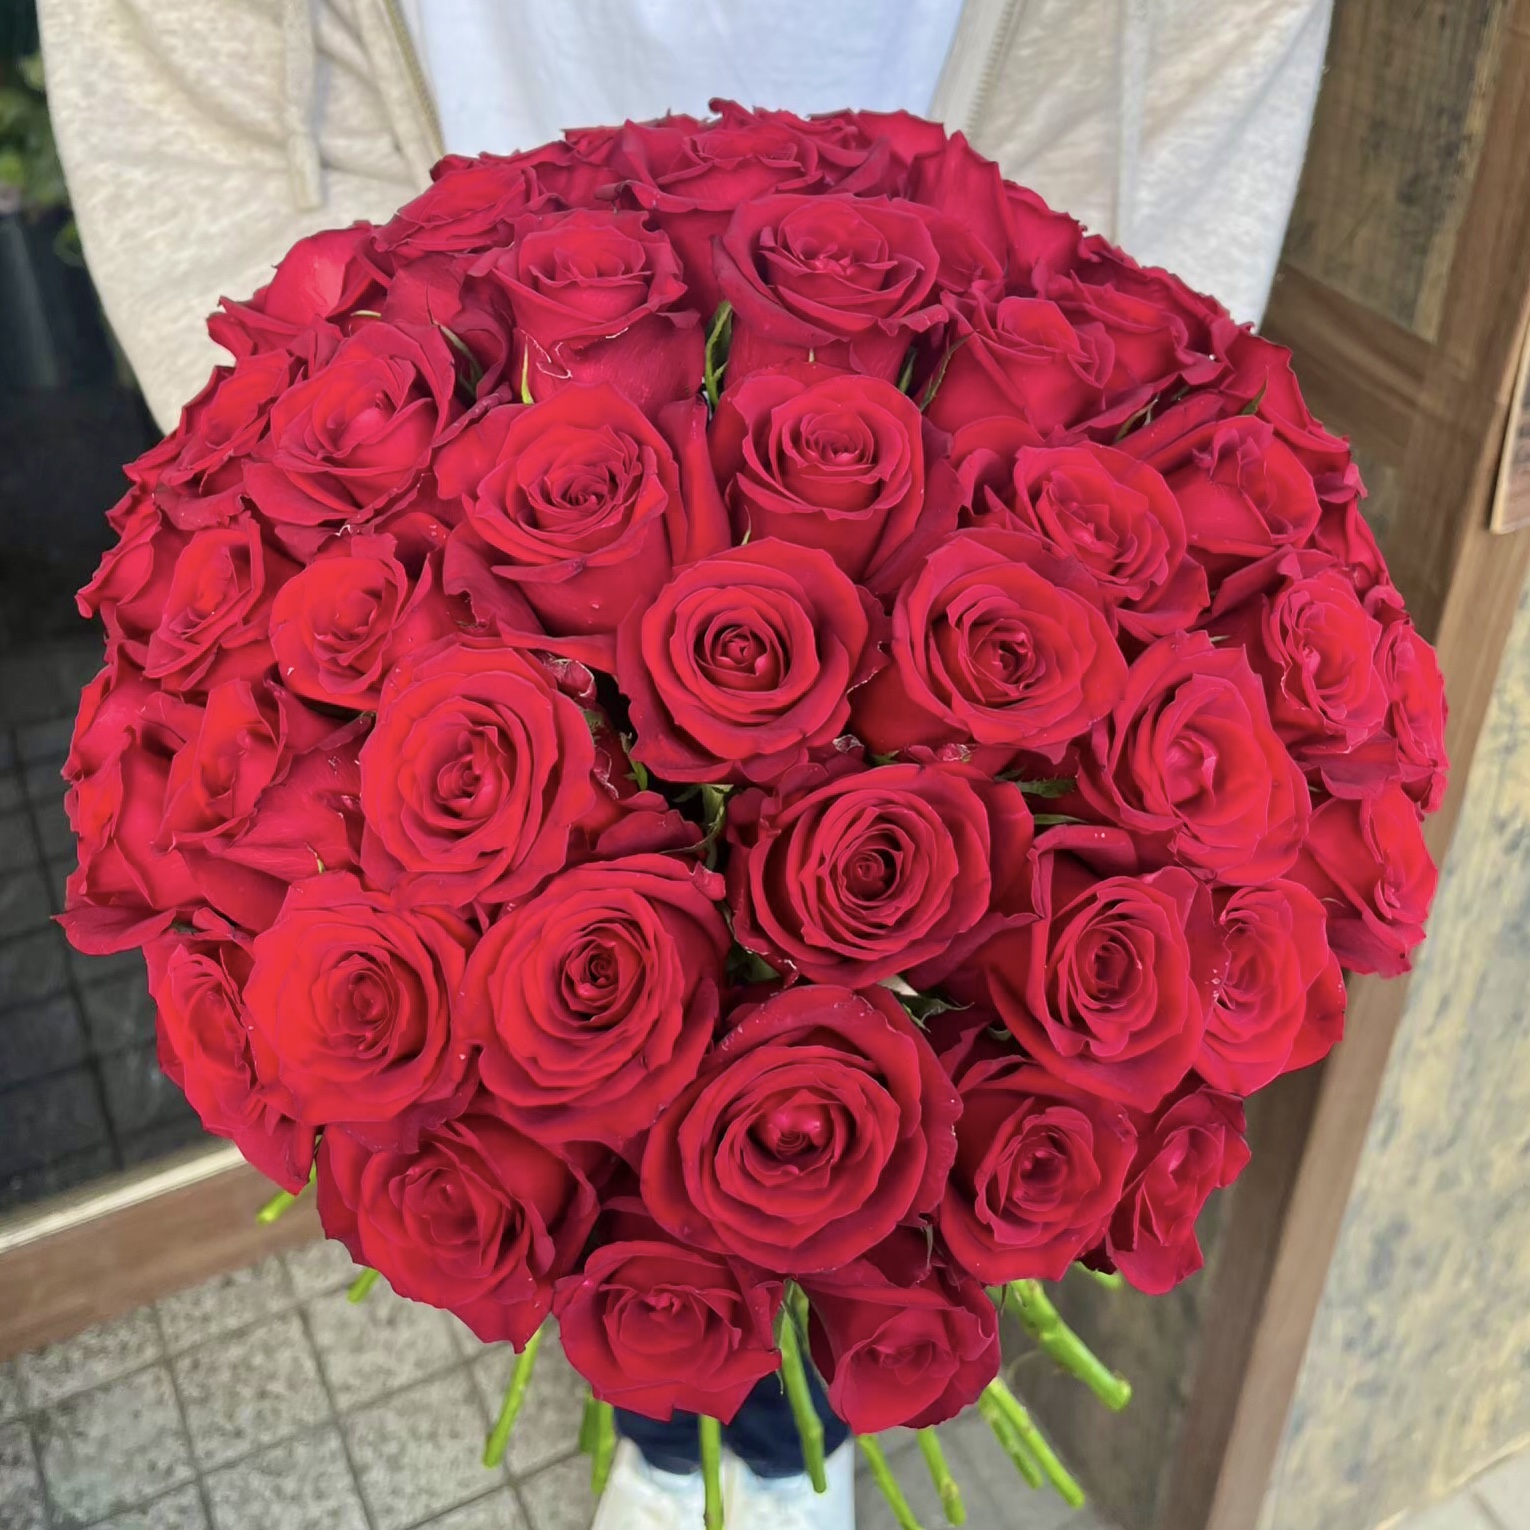 【結婚記念日】大切な日に贈る50本の赤いバラ